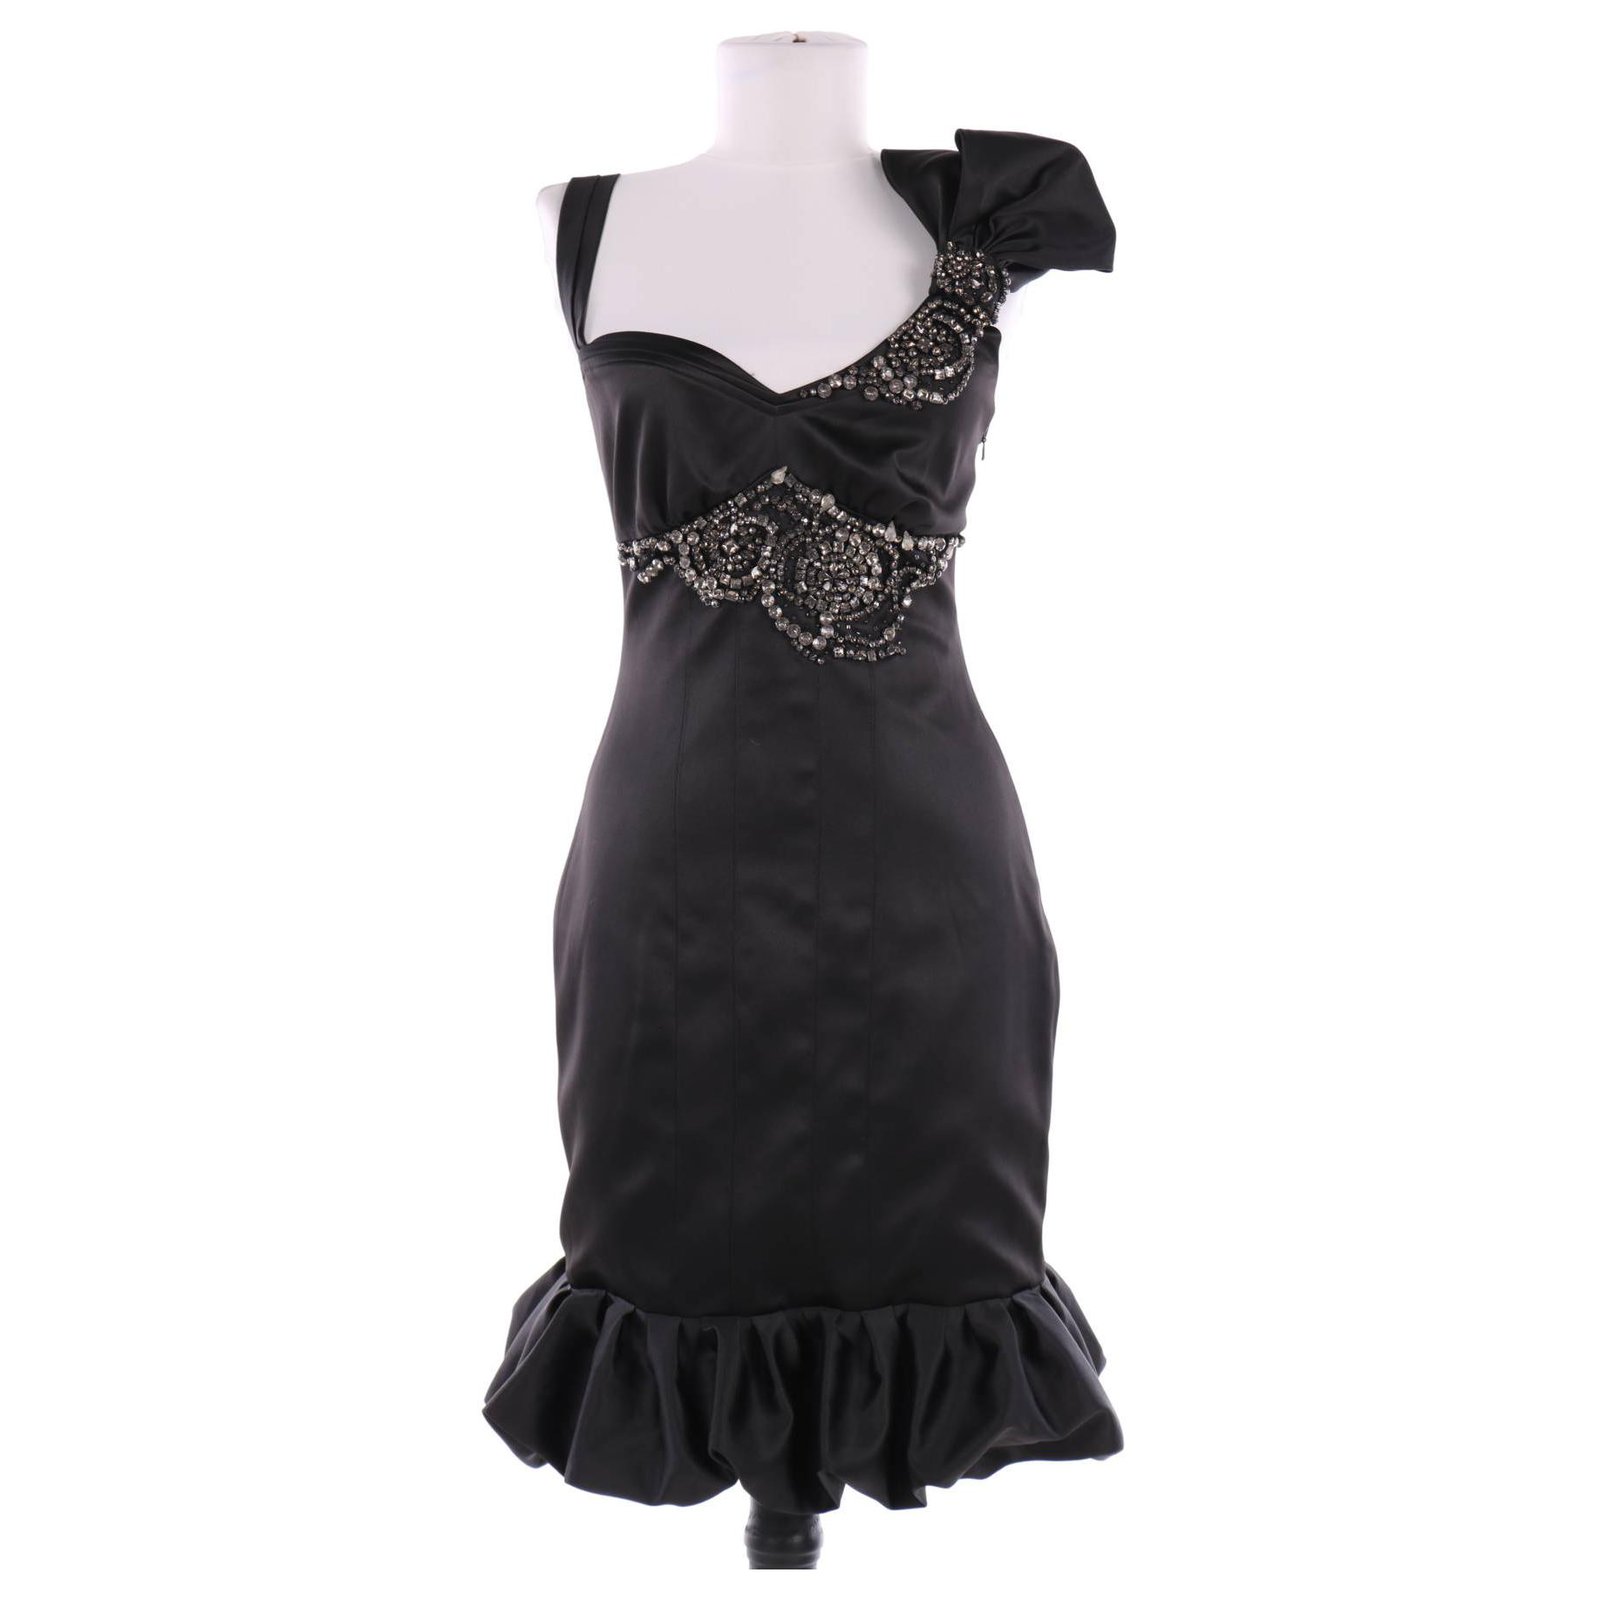 Woud accumuleren bezoeker Karen Millen Dresses Black Polyester Elastane ref.124941 - Joli Closet